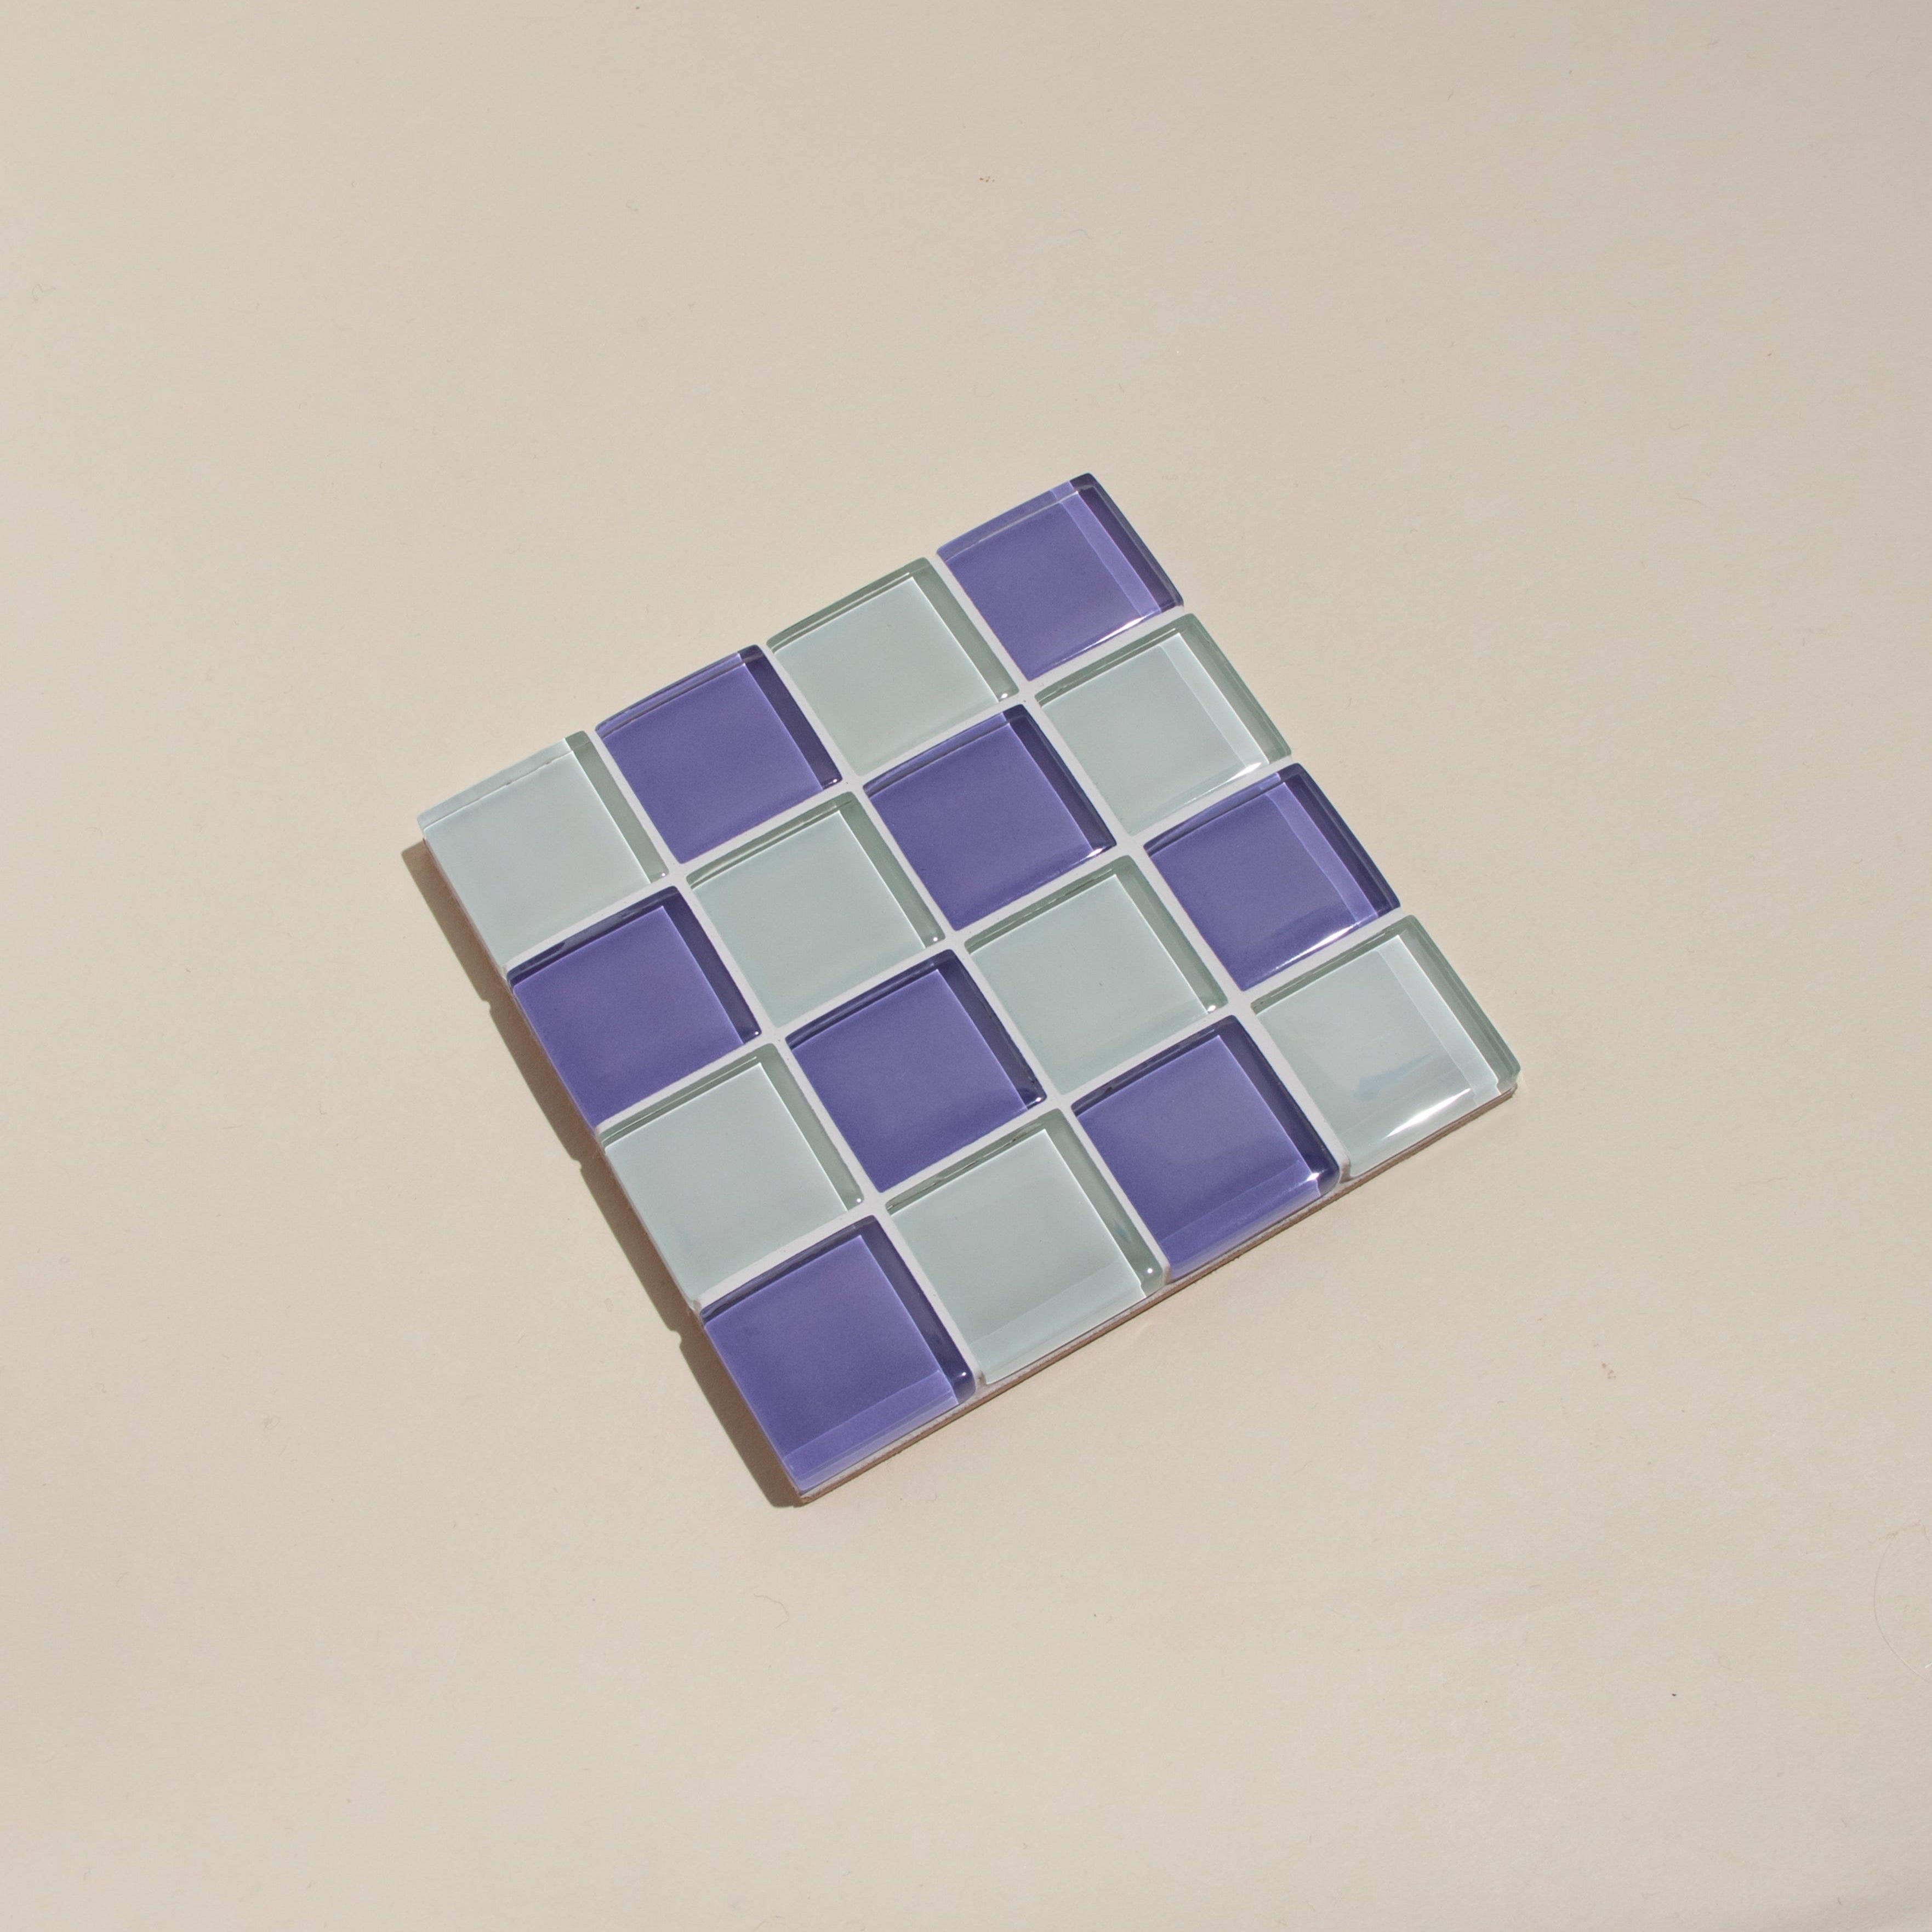 Glass Tile Coaster - Lavender Latte by Subtle Art Studios